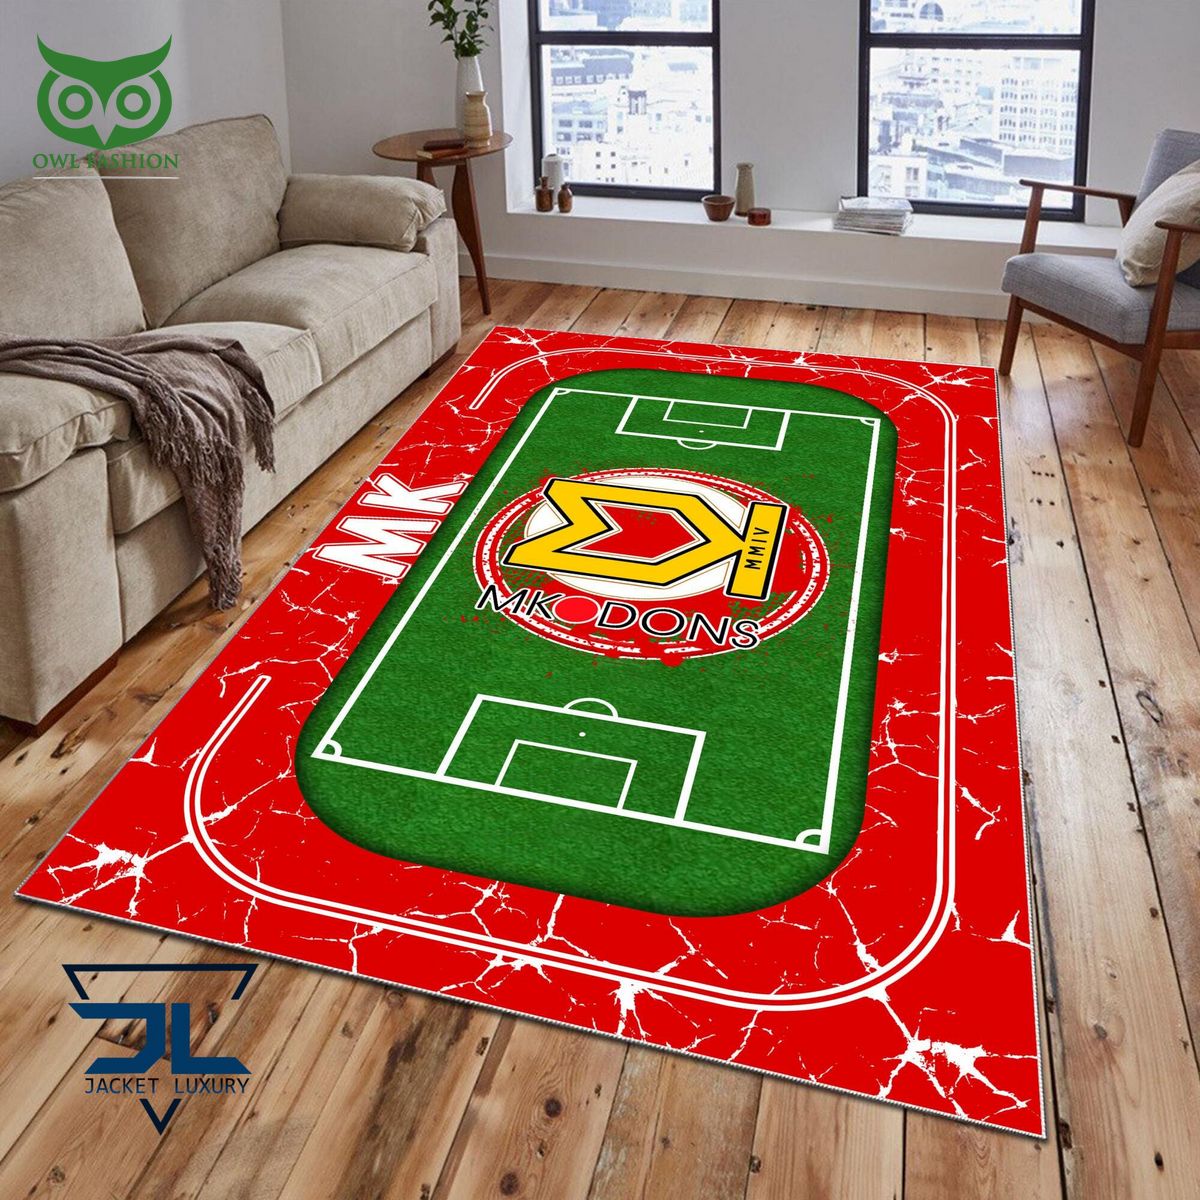 milton keynes dons english football league efl premium carpet rug 1 DldGI